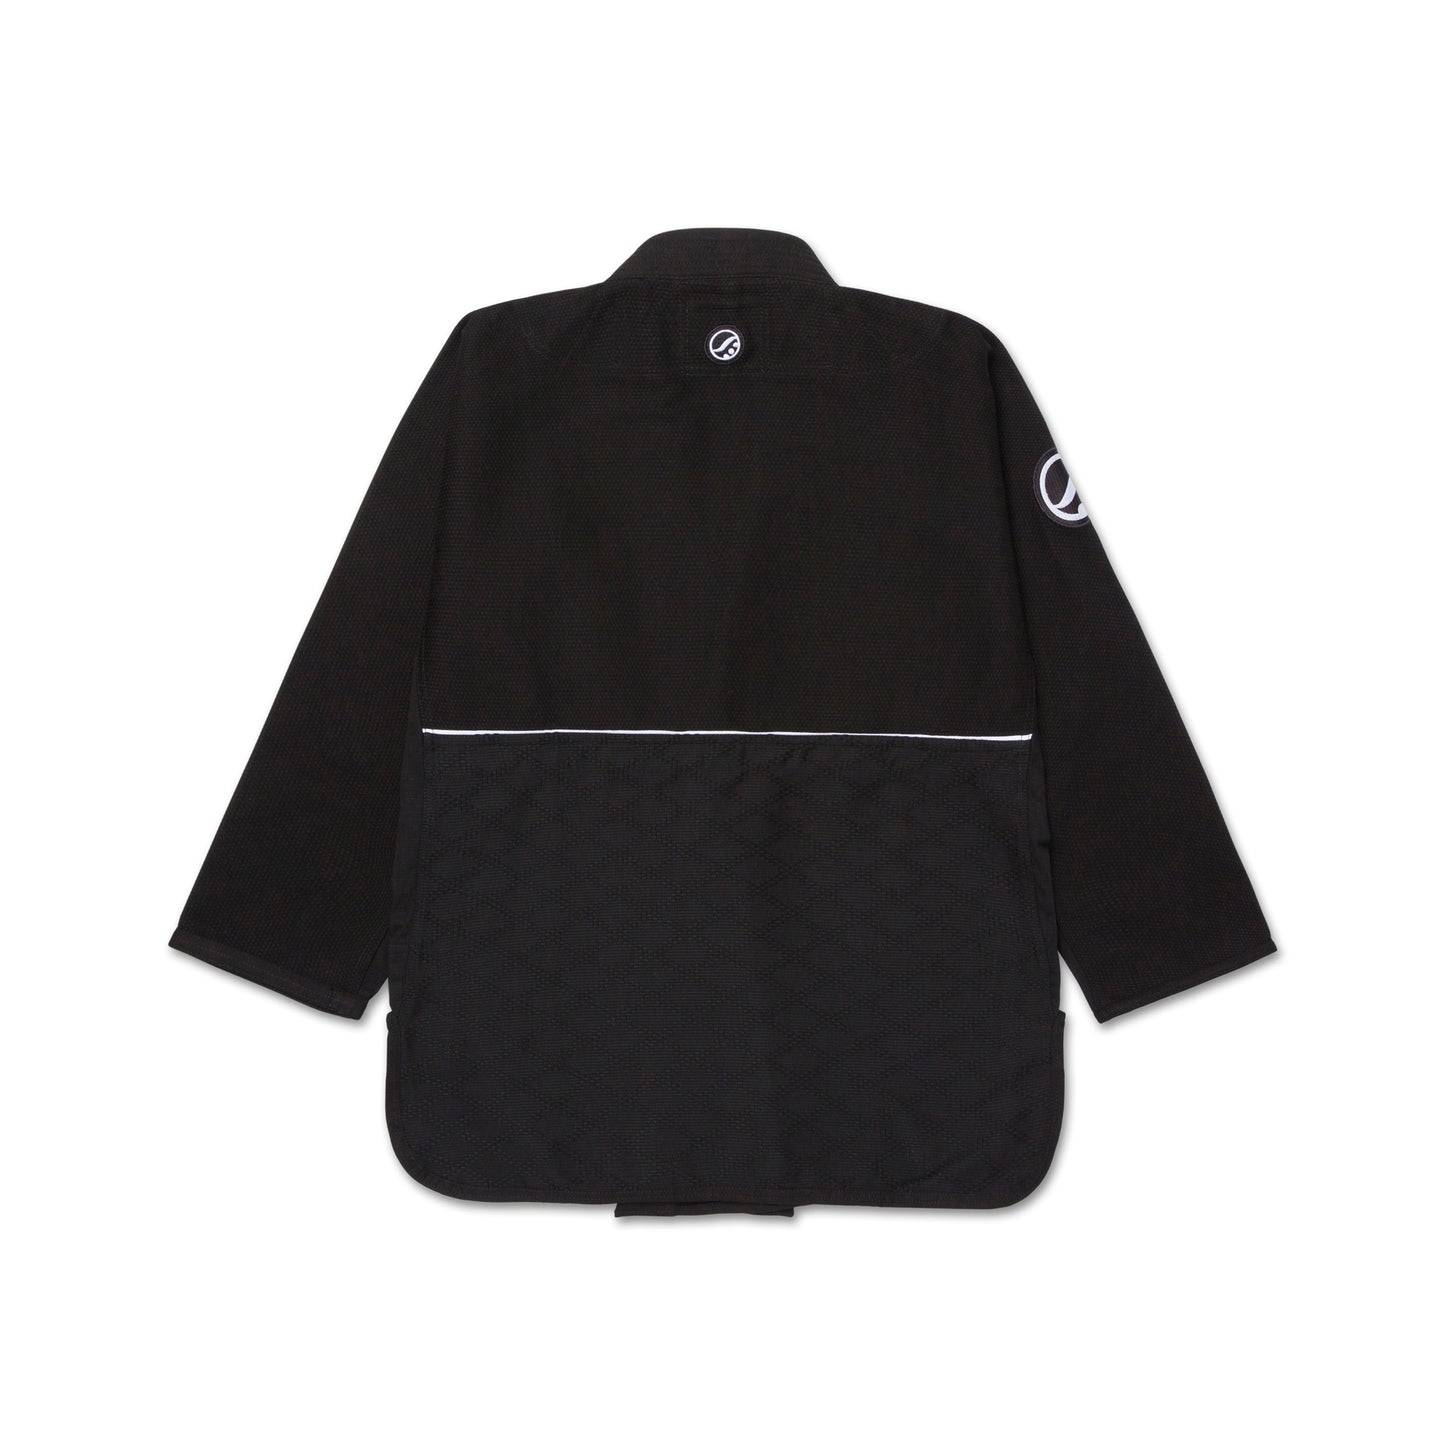 Articulated 2.2 Kimono [Black]